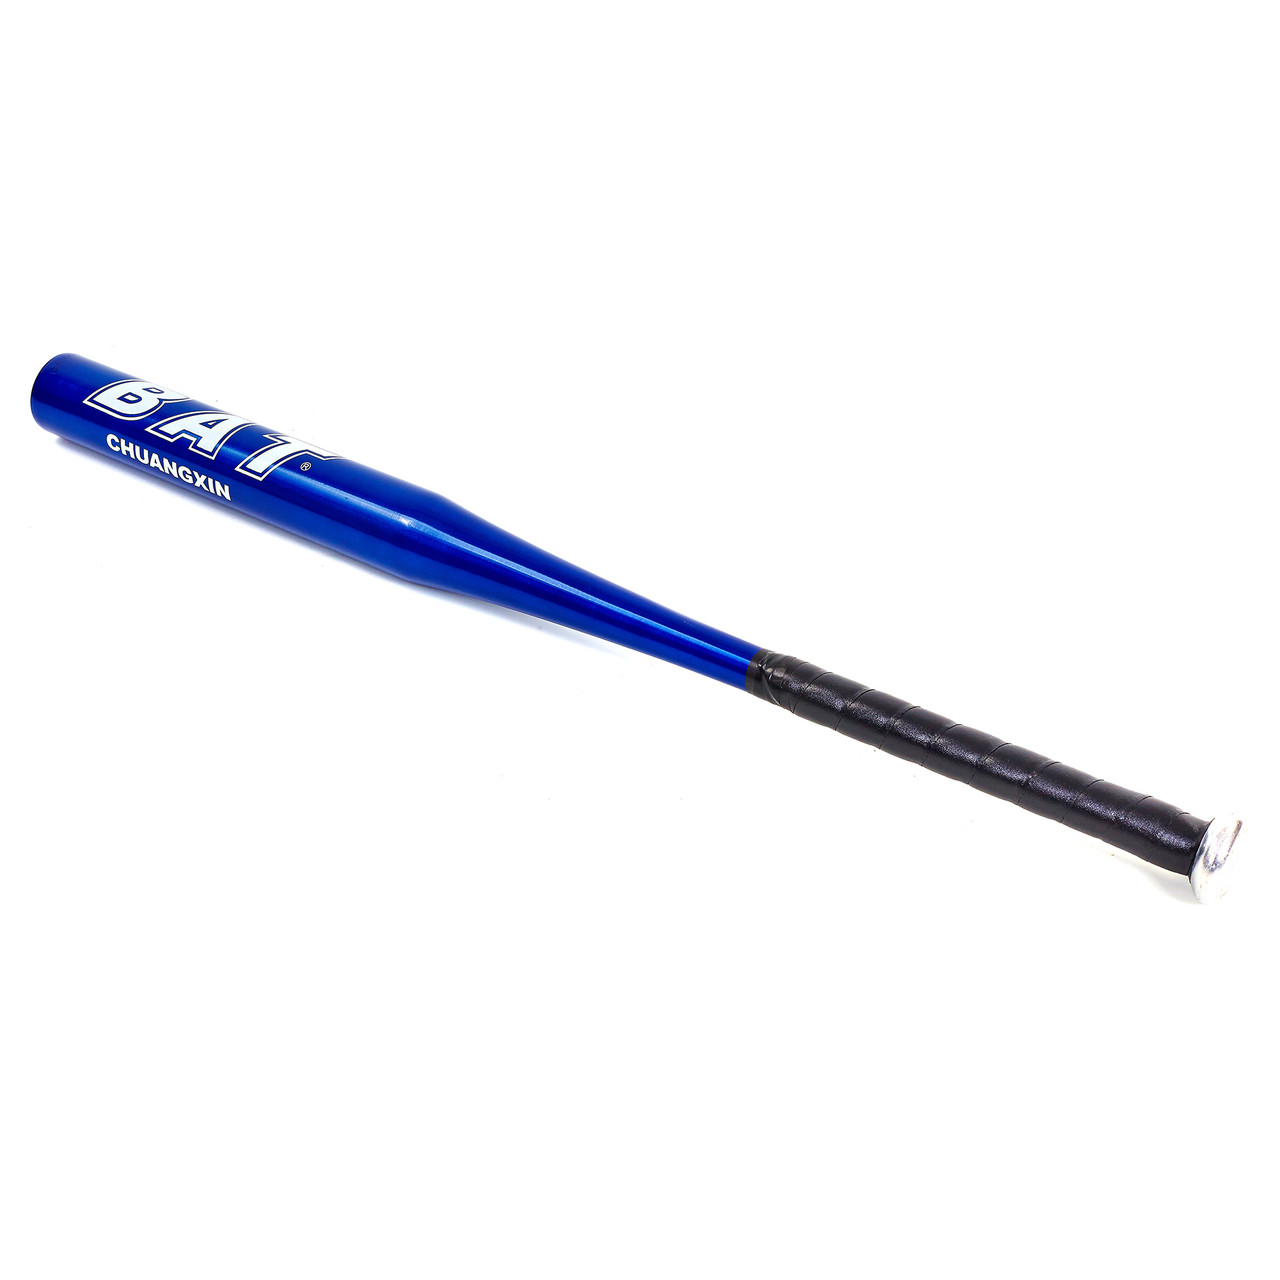 

Бита бейсбольная IVN Scout Pro Heroe алюминиевая 76 см 1863 синяя